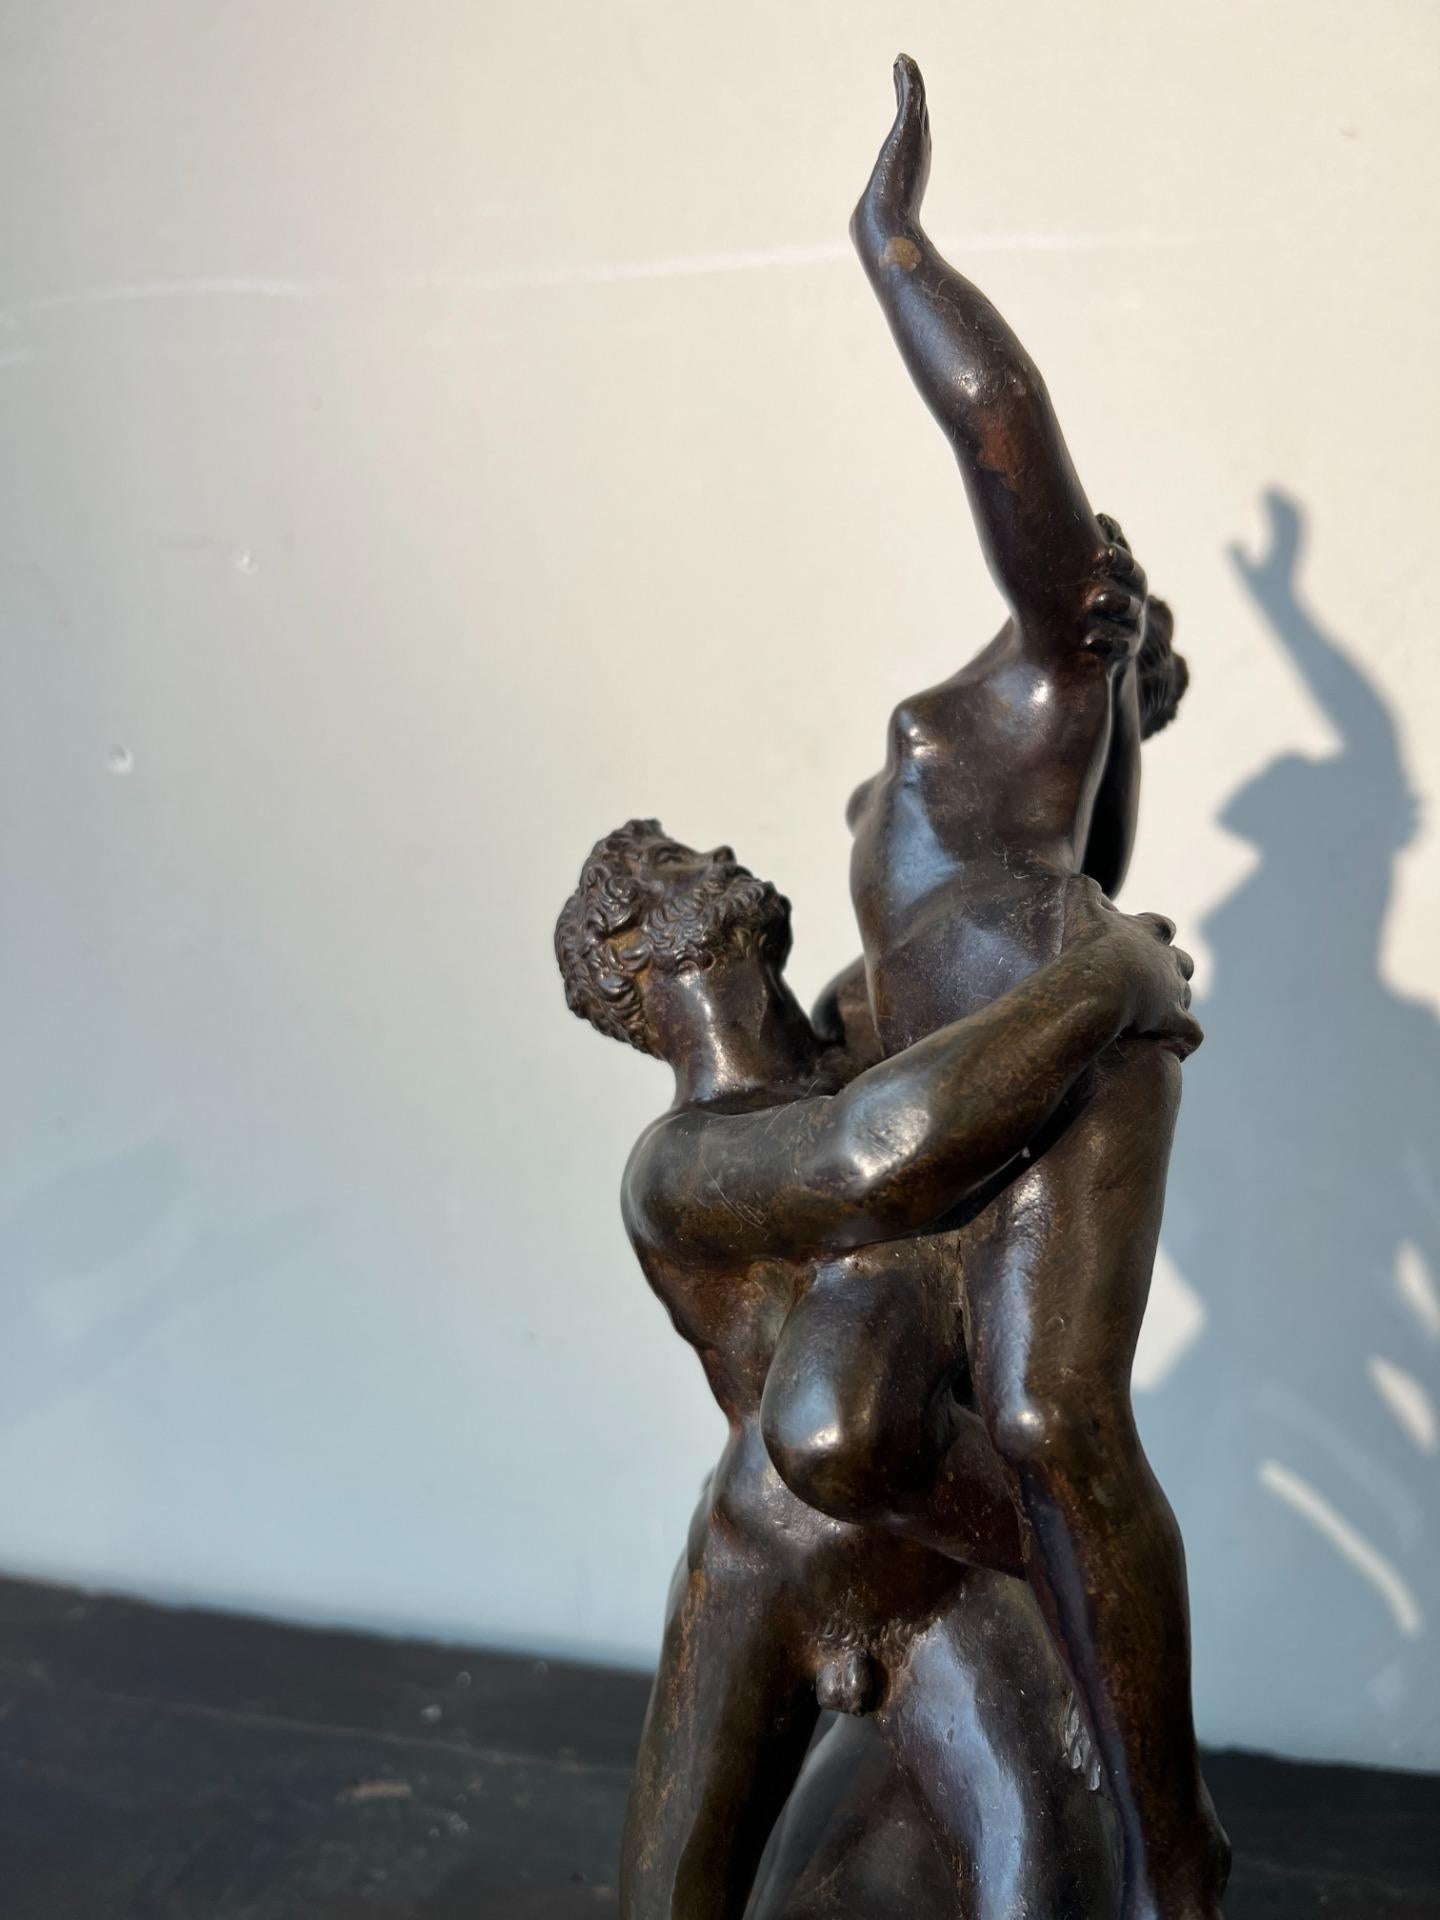 Magnifique groupe sculptural en bronze représentant le viol des Sabines, réalisé selon l'ancienne technique de la cire perdue. Le drame de la scène est rendu avec une grande maîtrise : au centre, un homme tient fermement dans ses mains une femme